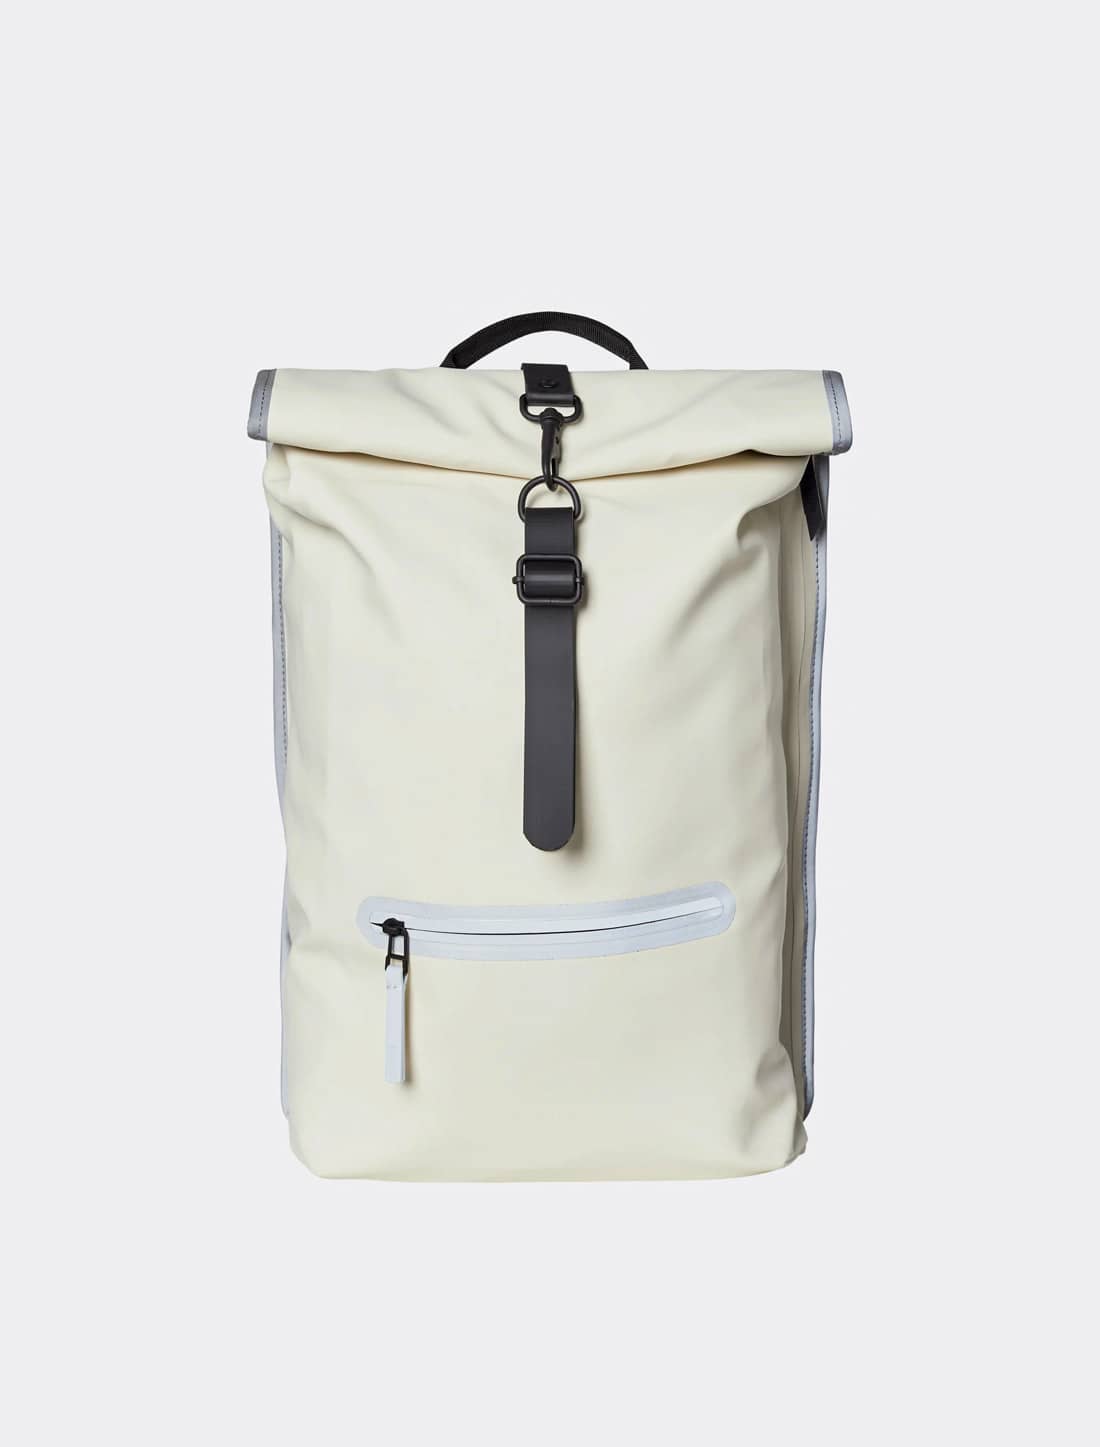 Minimalist backpack brand